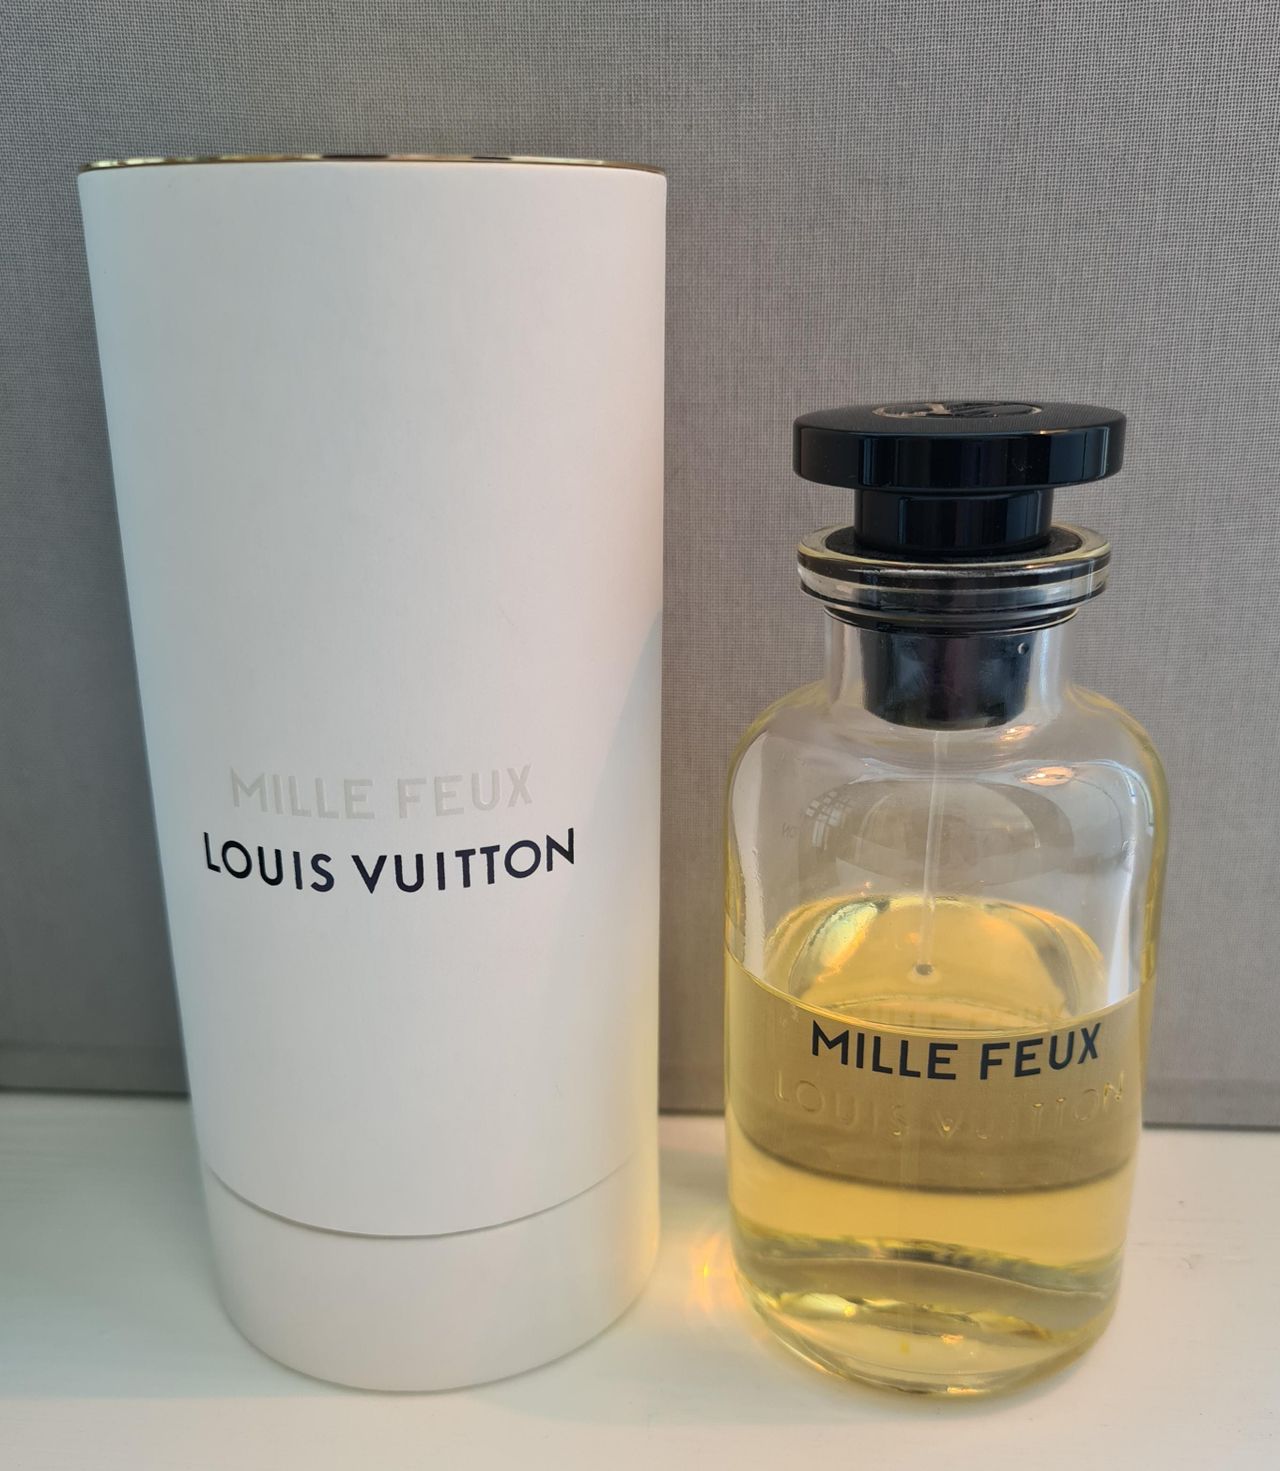 Louis Vuitton Mille Feux 100ml